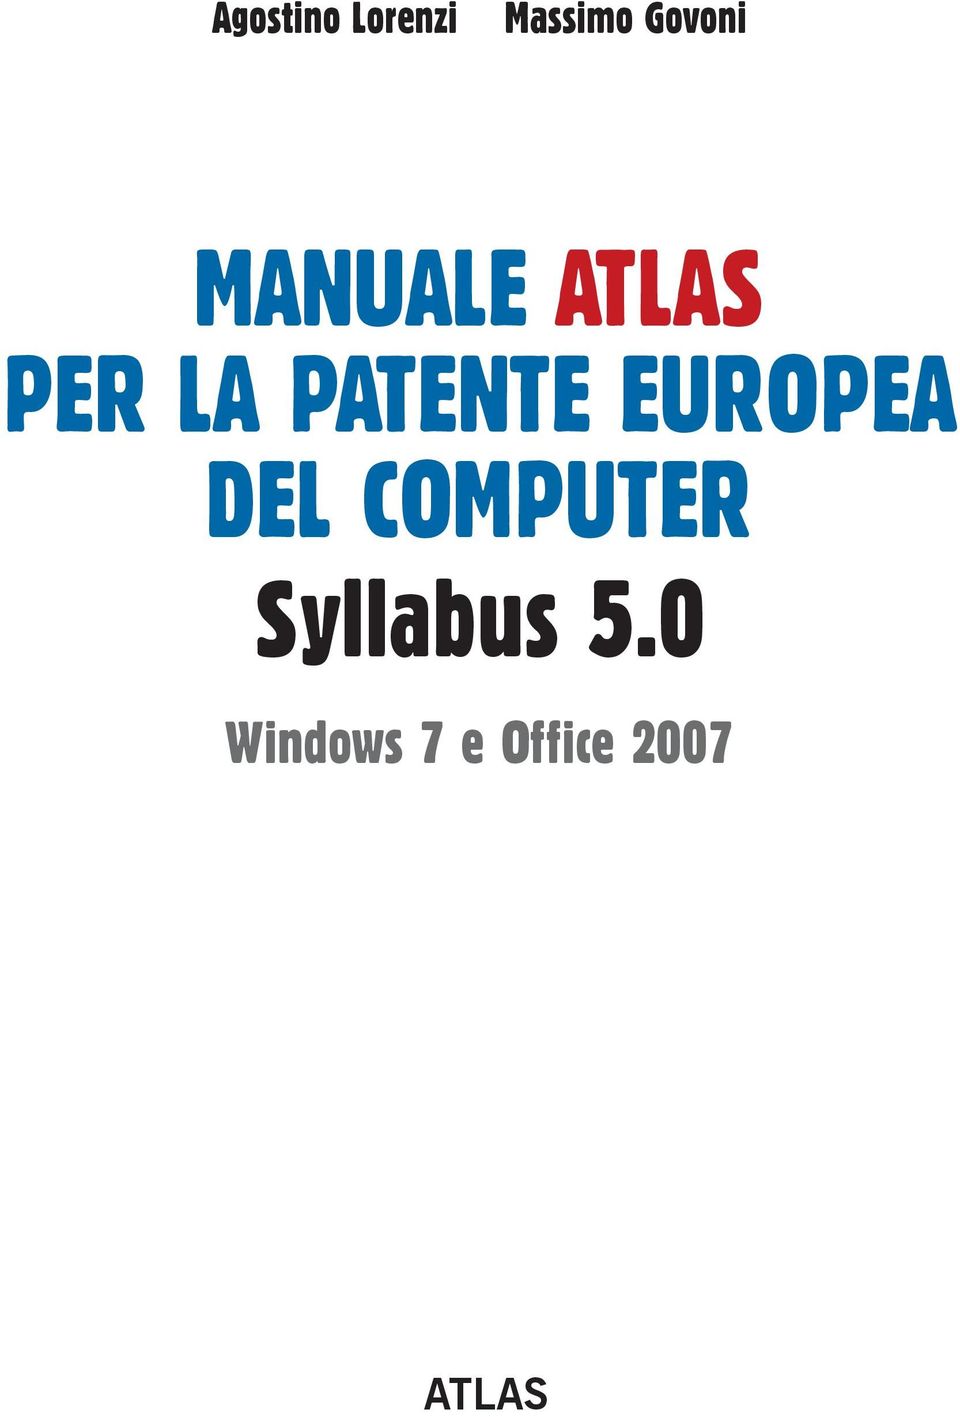 PATENTE EUROPEA DEL COMPUTER